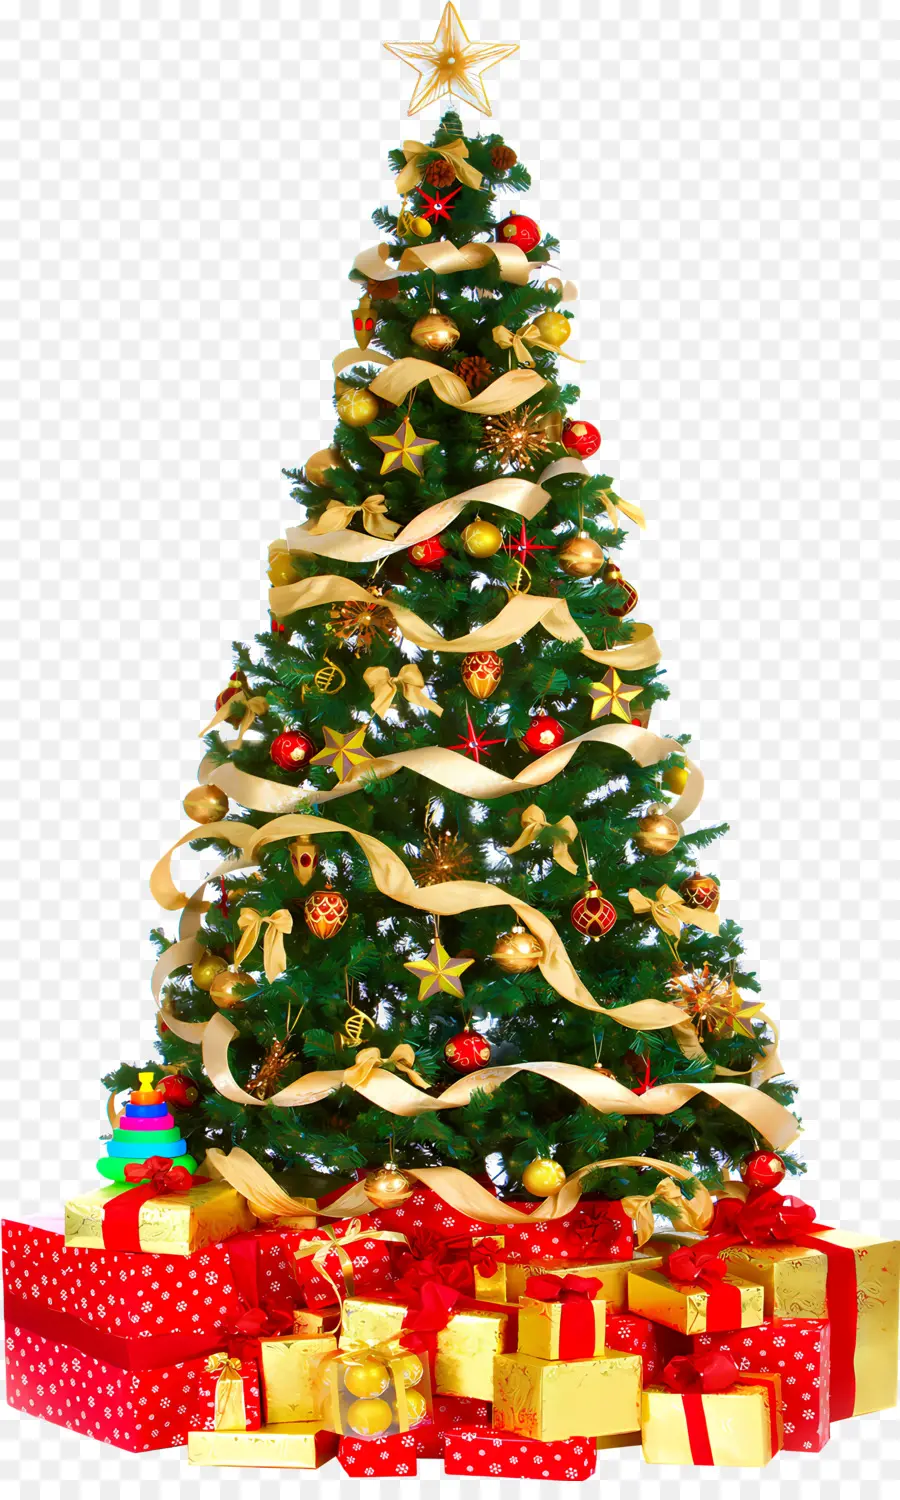 Weihnachtsbaum - Weihnachtsbaum aus Geschenken, Stern